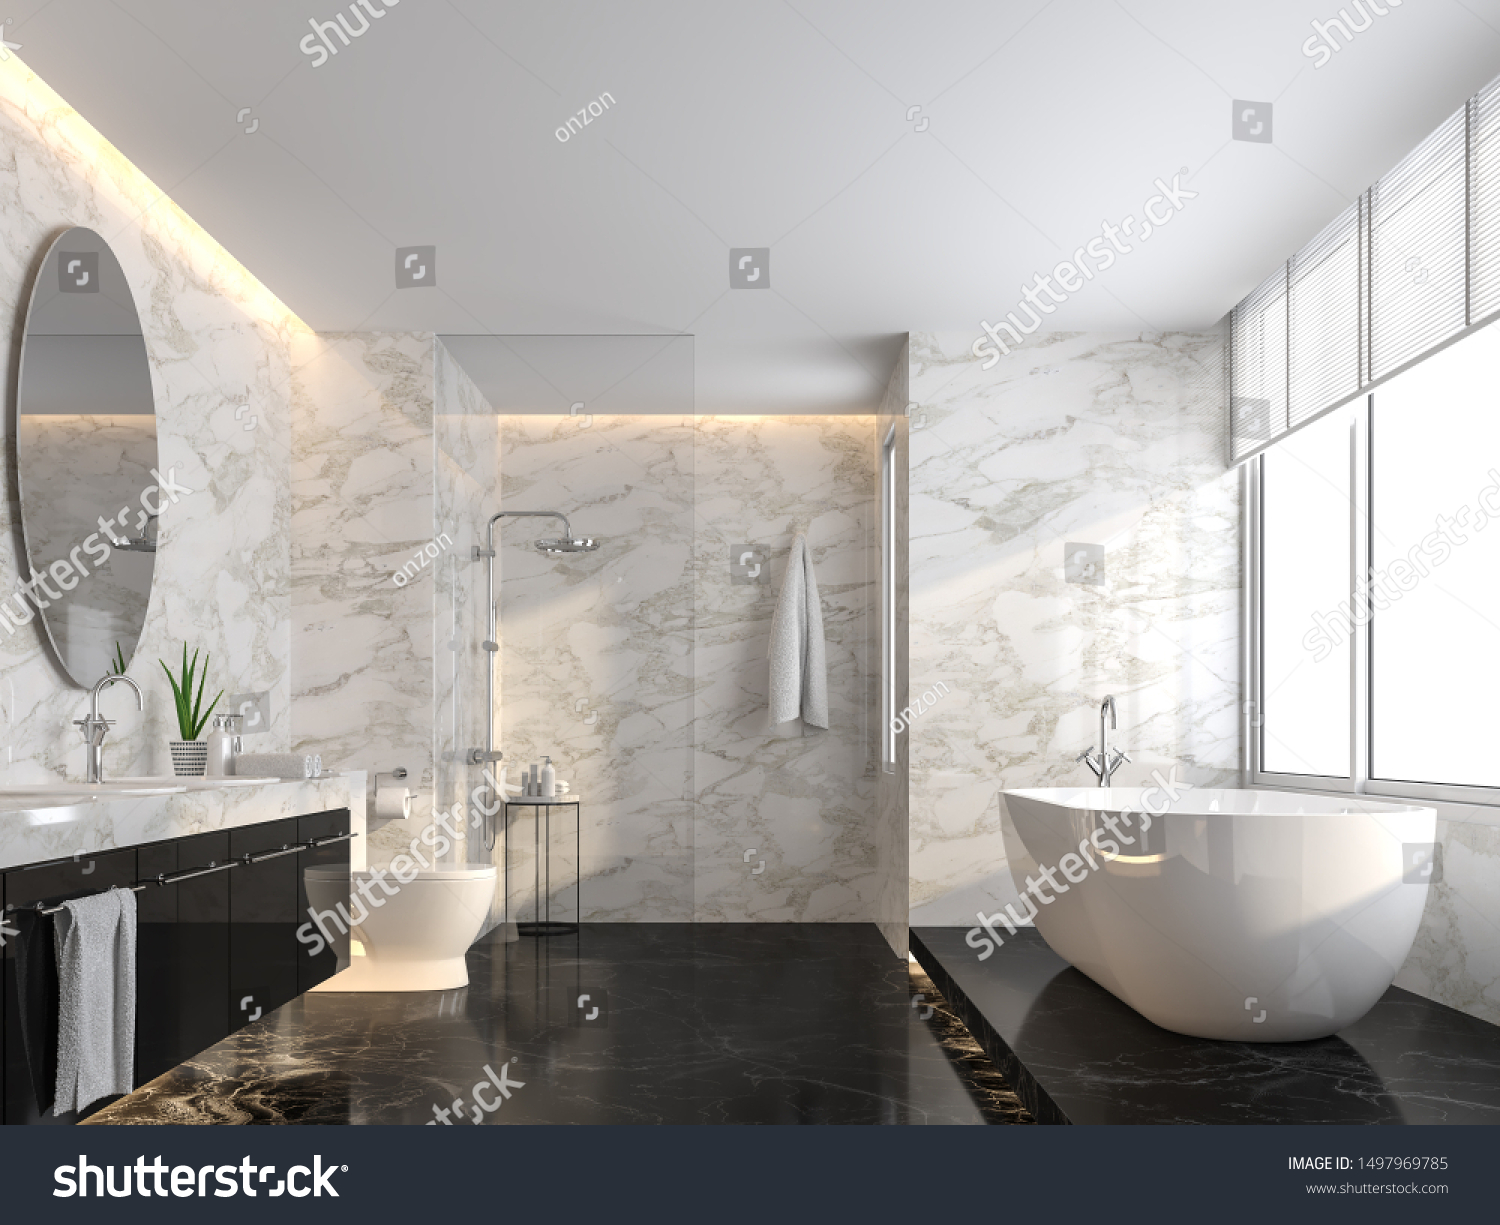 Luxury Bathroom Black Marble Floor White Stock Illustration 1497969785 ...